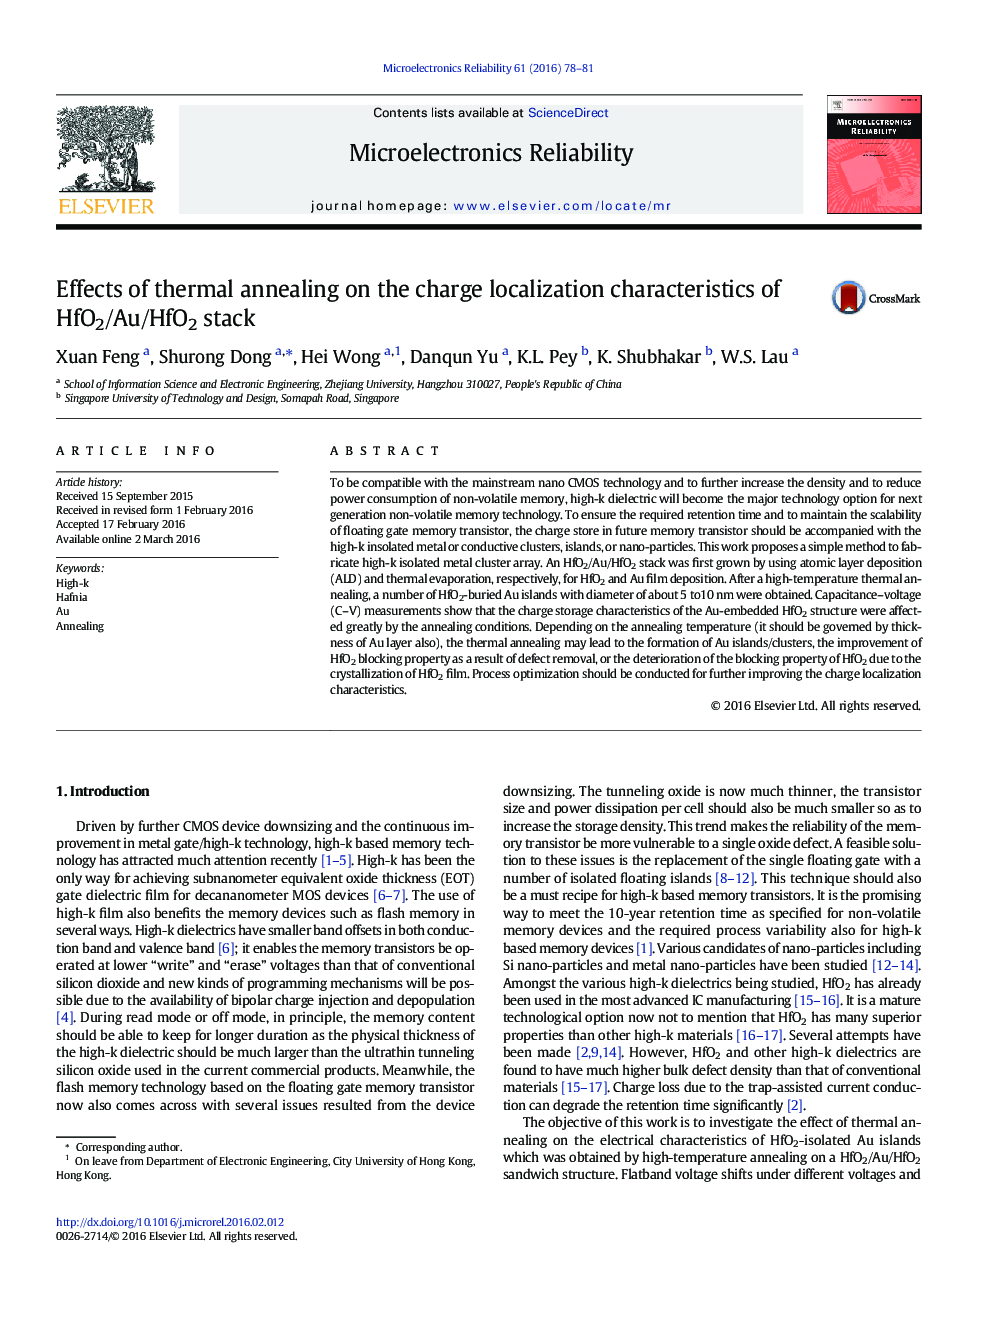 اثر انجماد حرارتی بر ویژگی های محلی سازی شارژ پشته HfO2 / Au / HfO2 